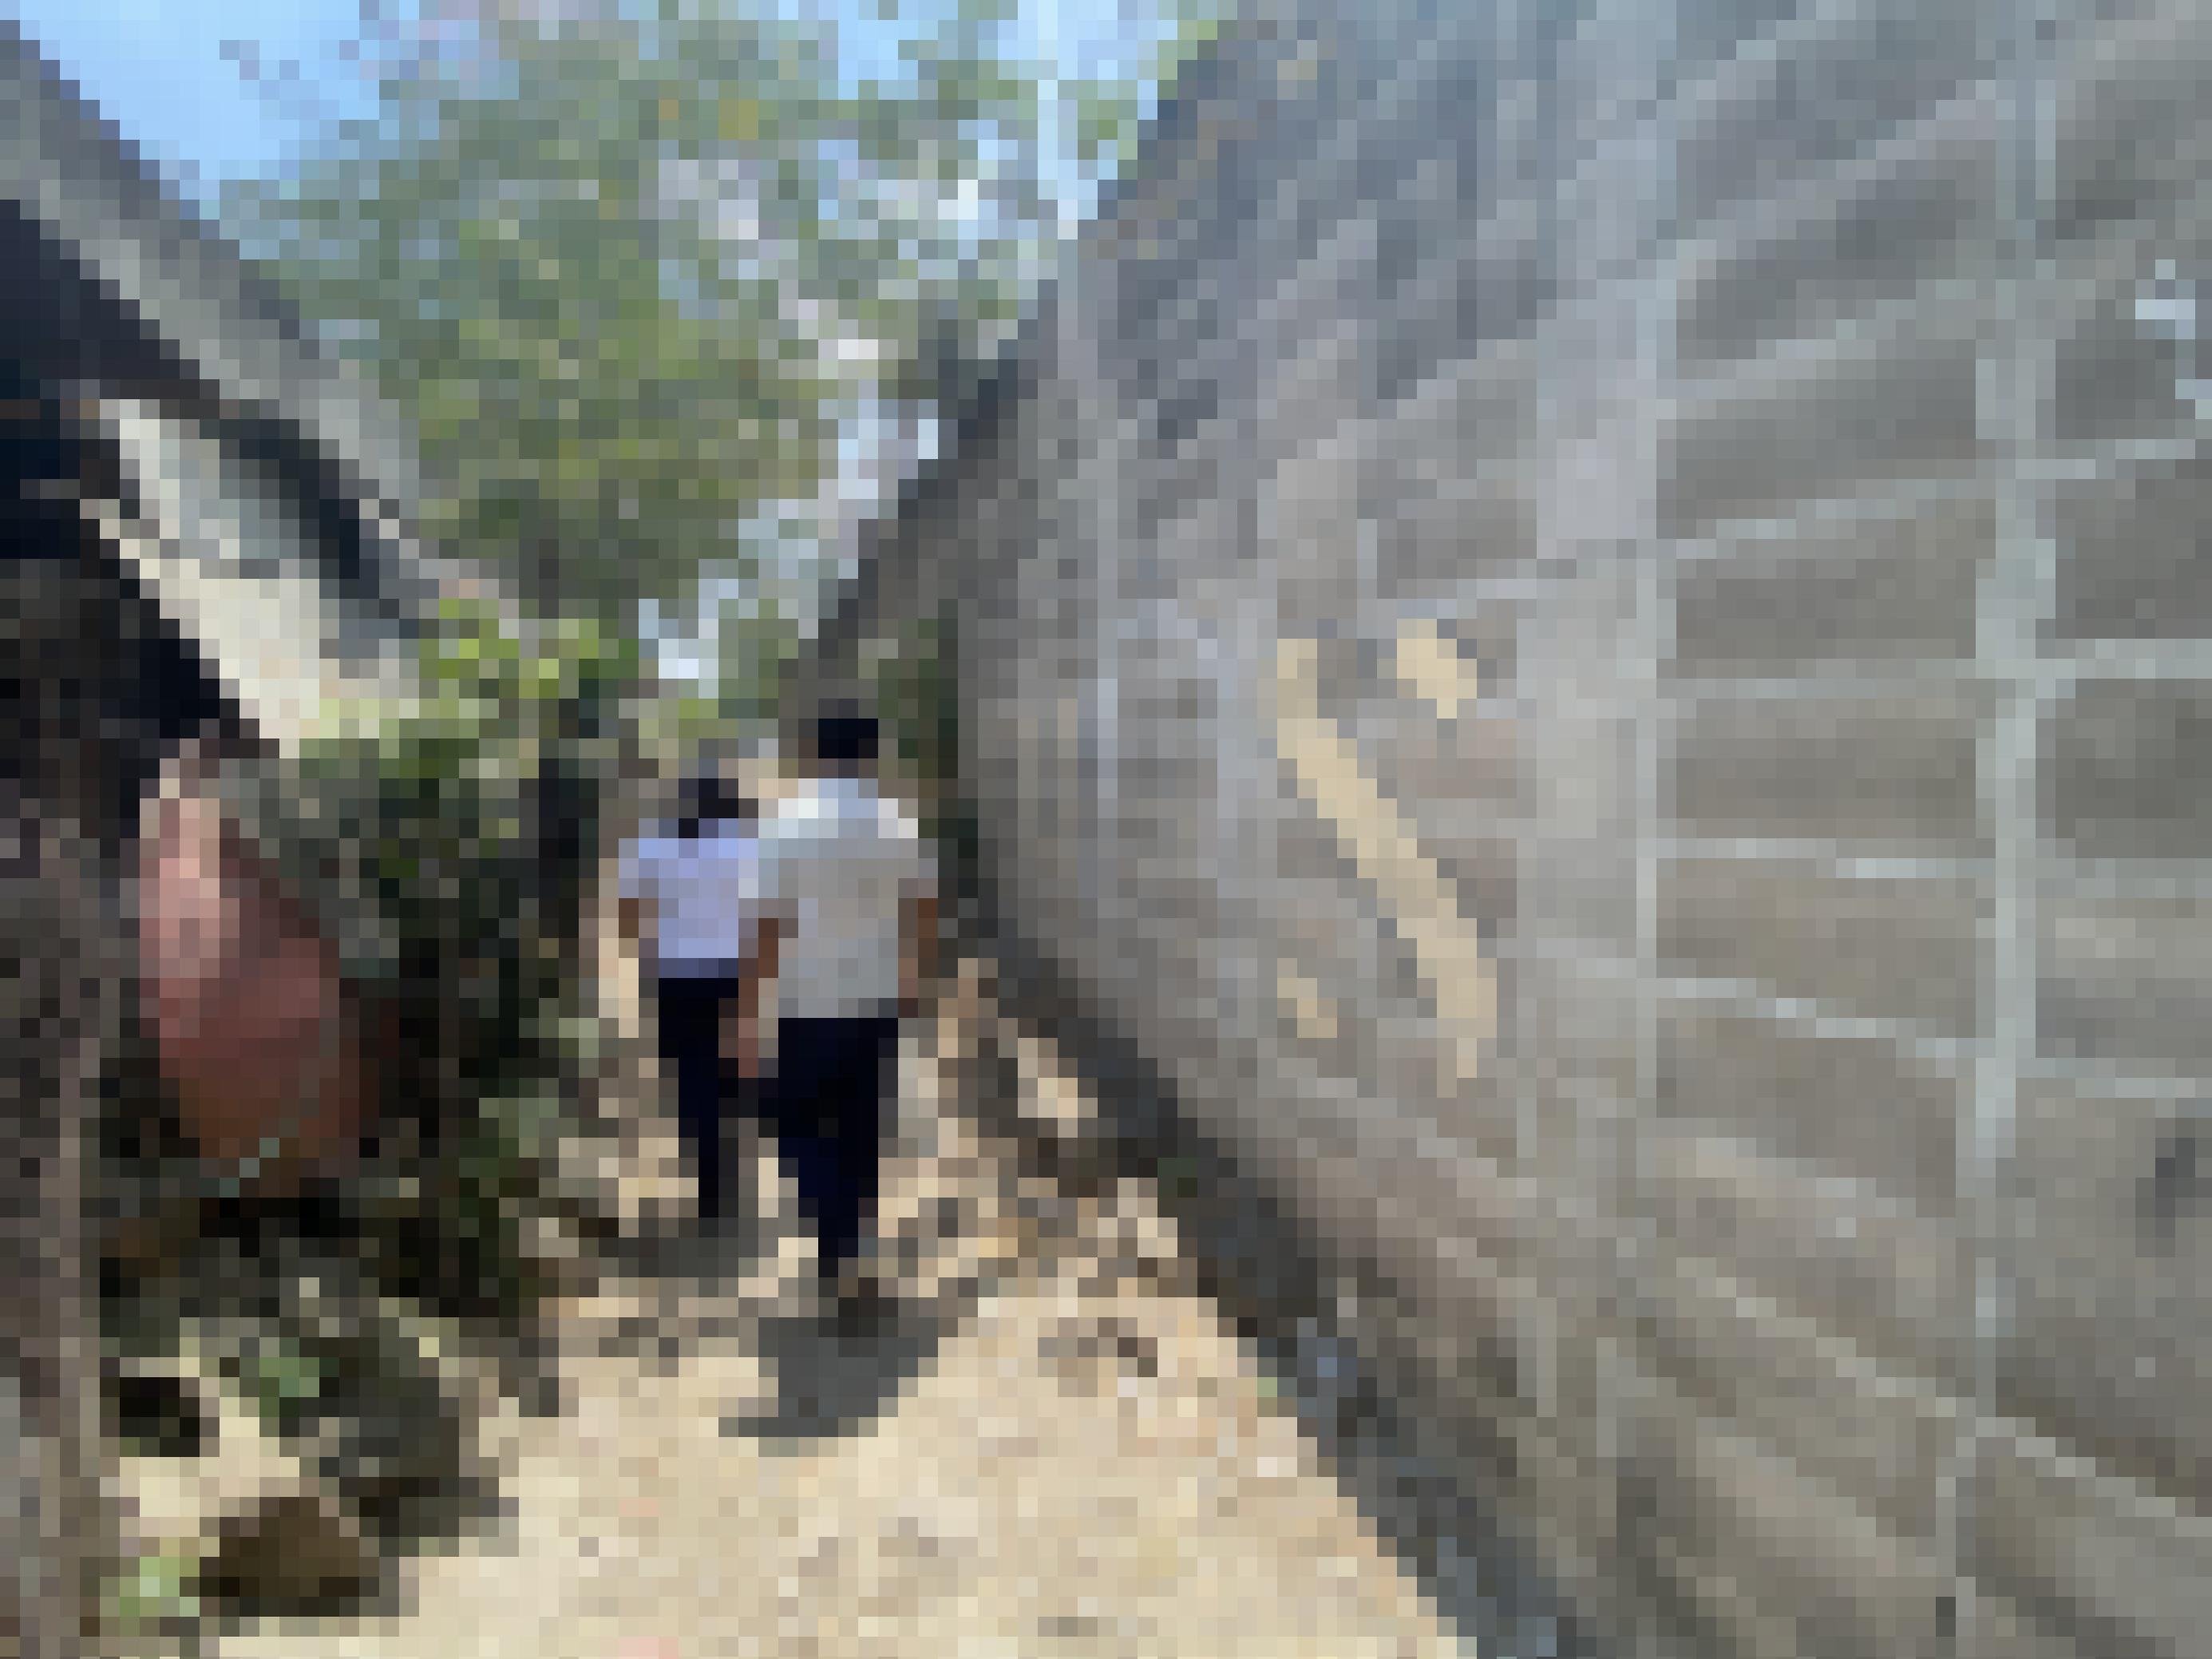 Eine unverputzte Mauer mit einem Graffiti MS, daran laufen zwei Schüler in weisser Uniform vorbei auf einem Trampelpfad.